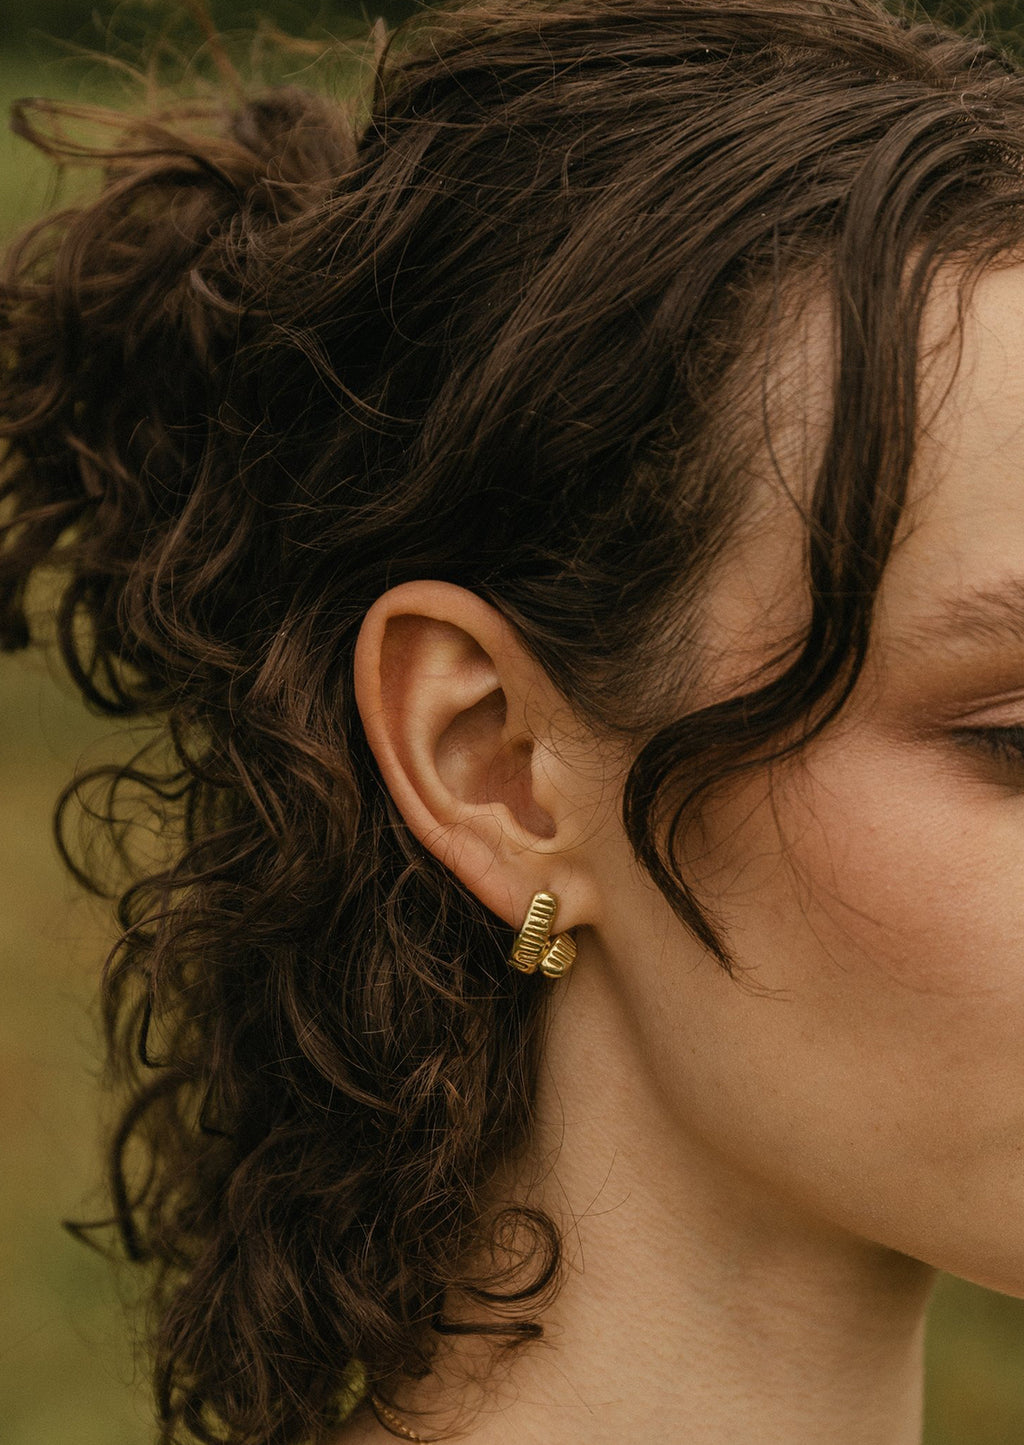 2: A woman wearing a pair of brass earrings.